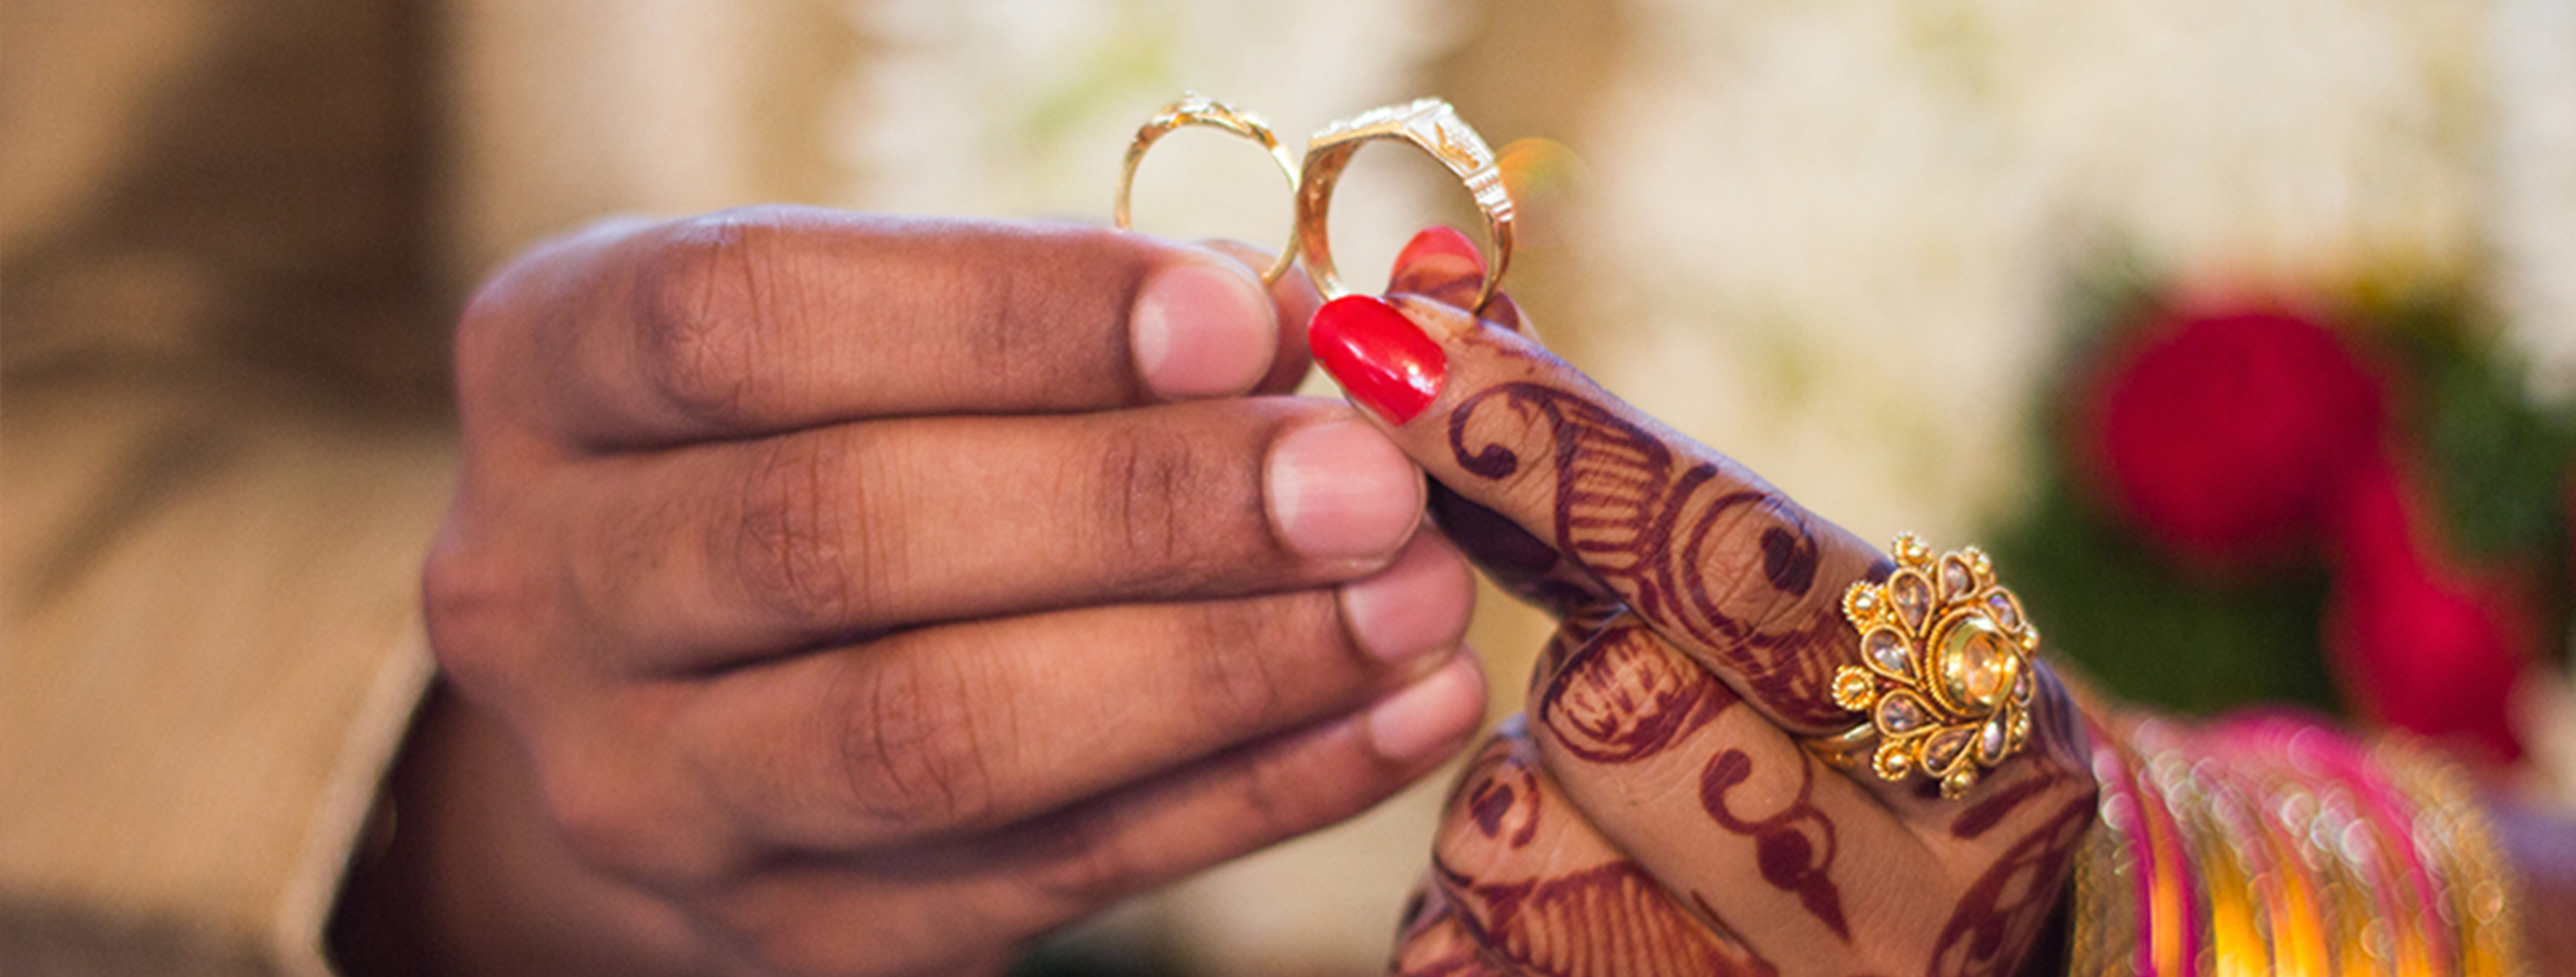 Engagement Rings Design: सगाई की अंगूठी के ऐसे 20 डिज़ाइन्स जो एक नज़र में  आ जाएंगे पसंद | unique designs of engagement rings for your special day